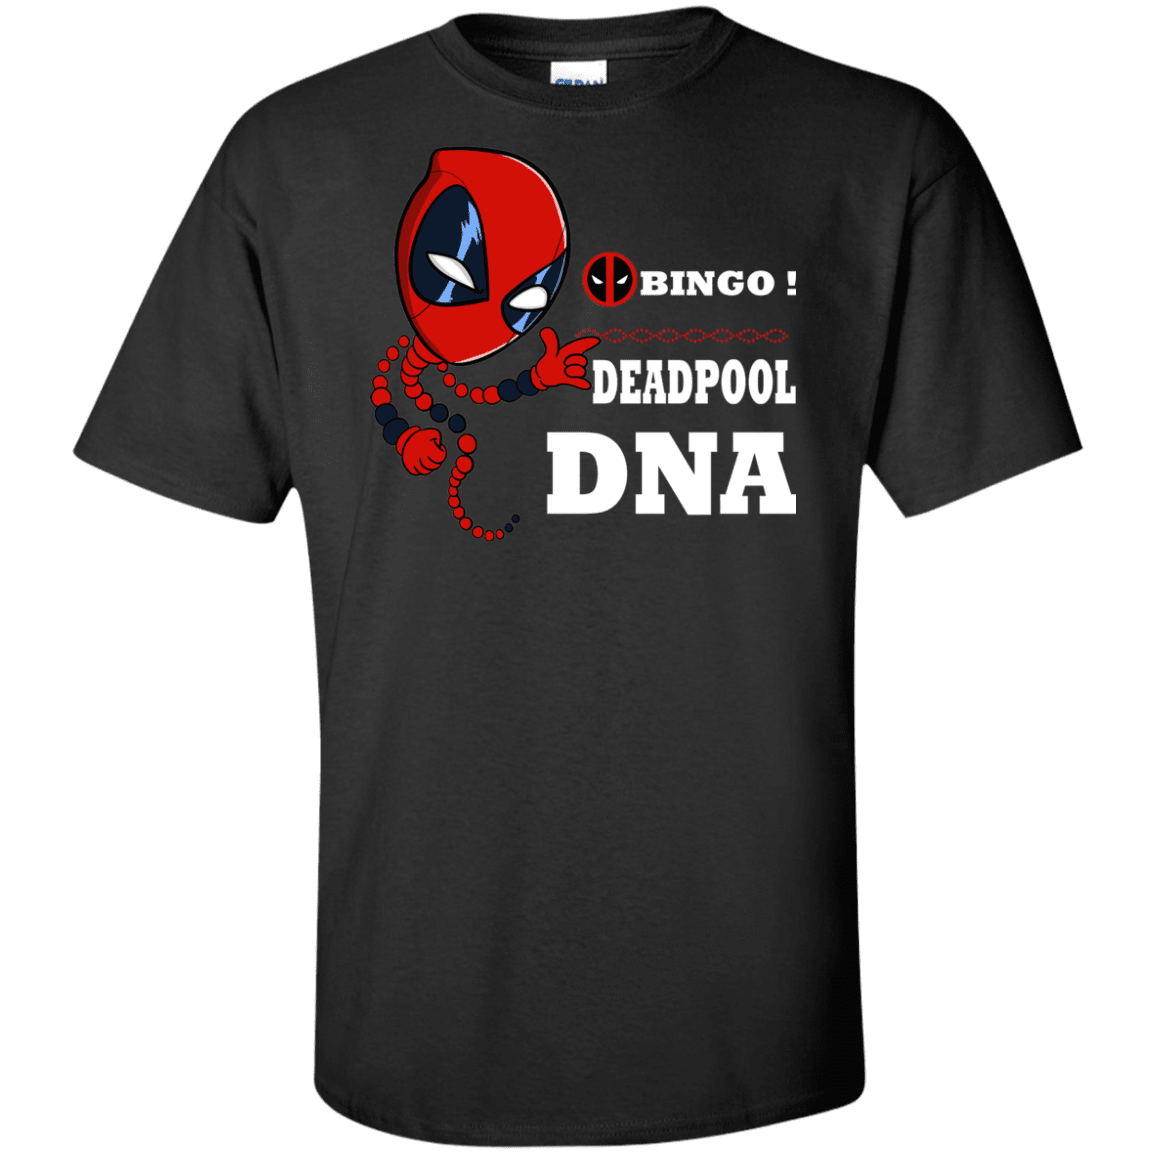 T-Shirts Black / XLT Bingo Deadpool Tall T-Shirt